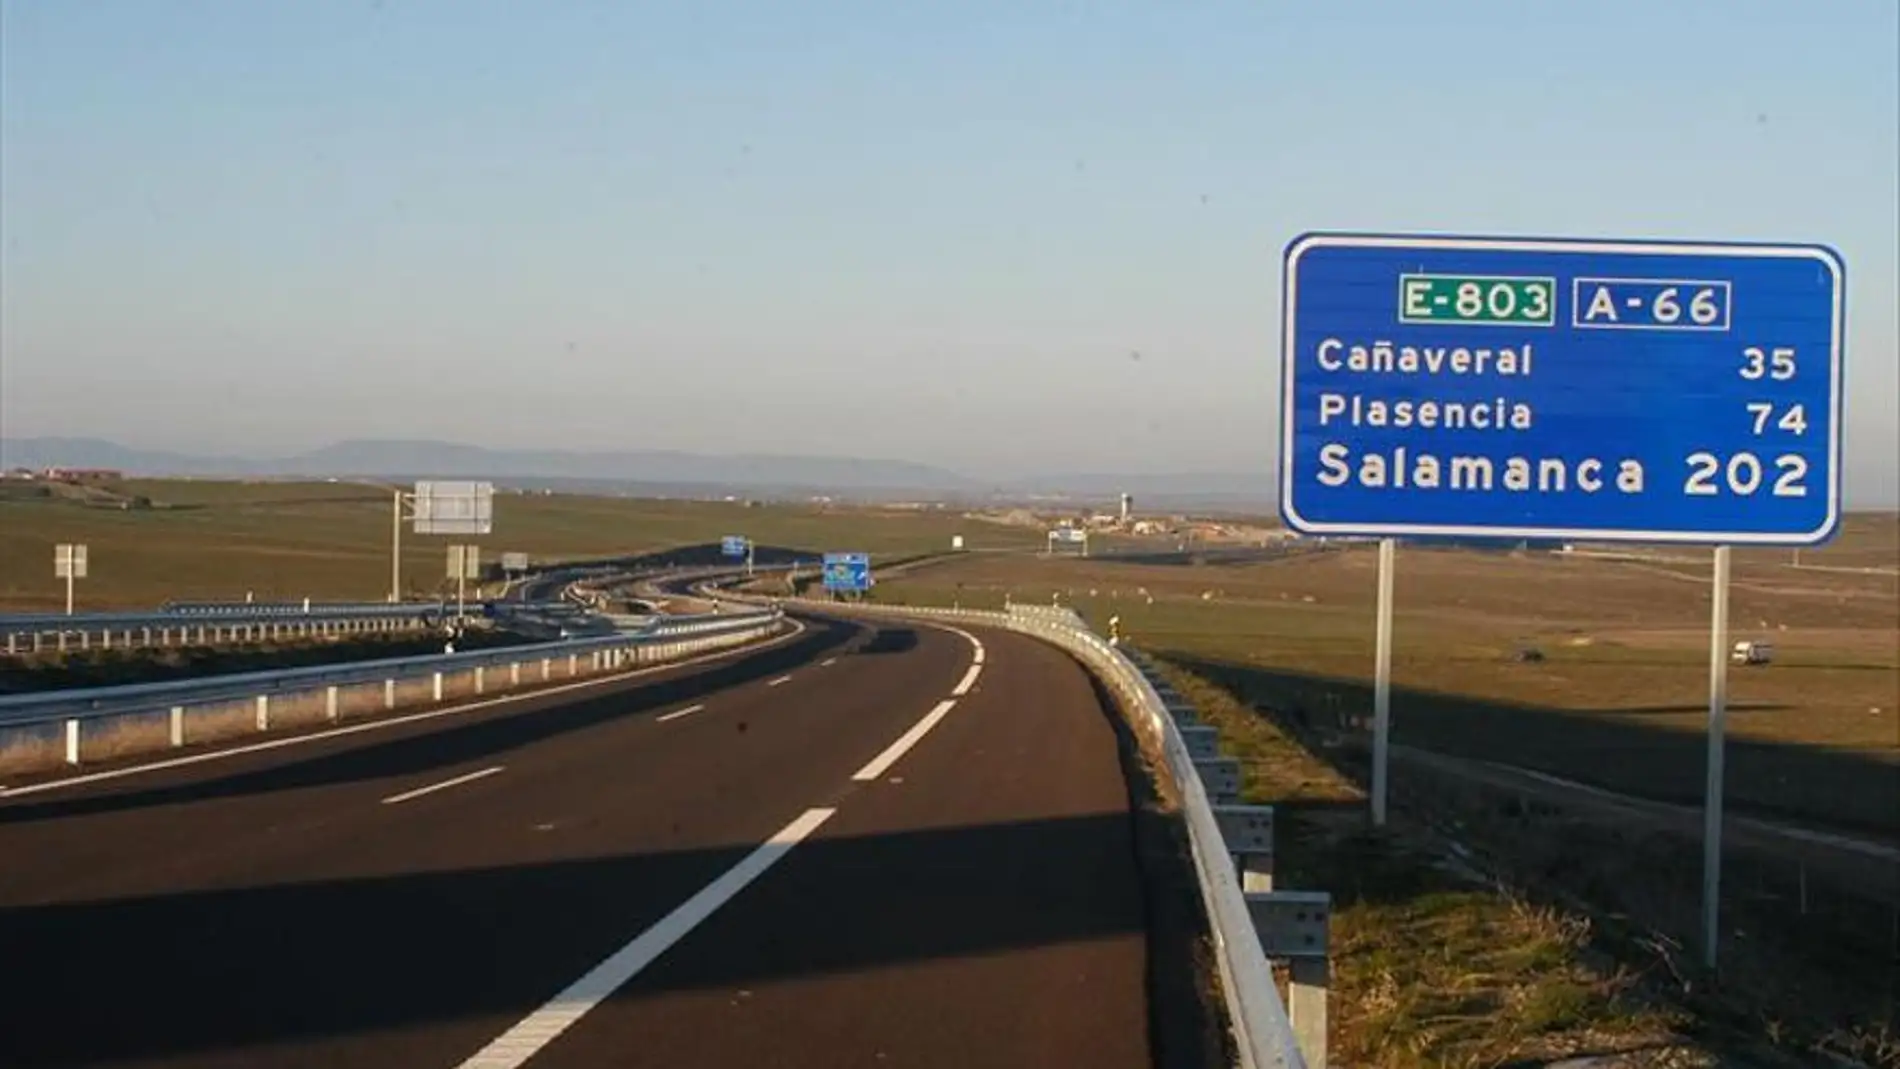 Licitadas por 8,68 millones las obras de rehabilitación del firme de la autovía A-66 entre Plasencia y Cañaveral